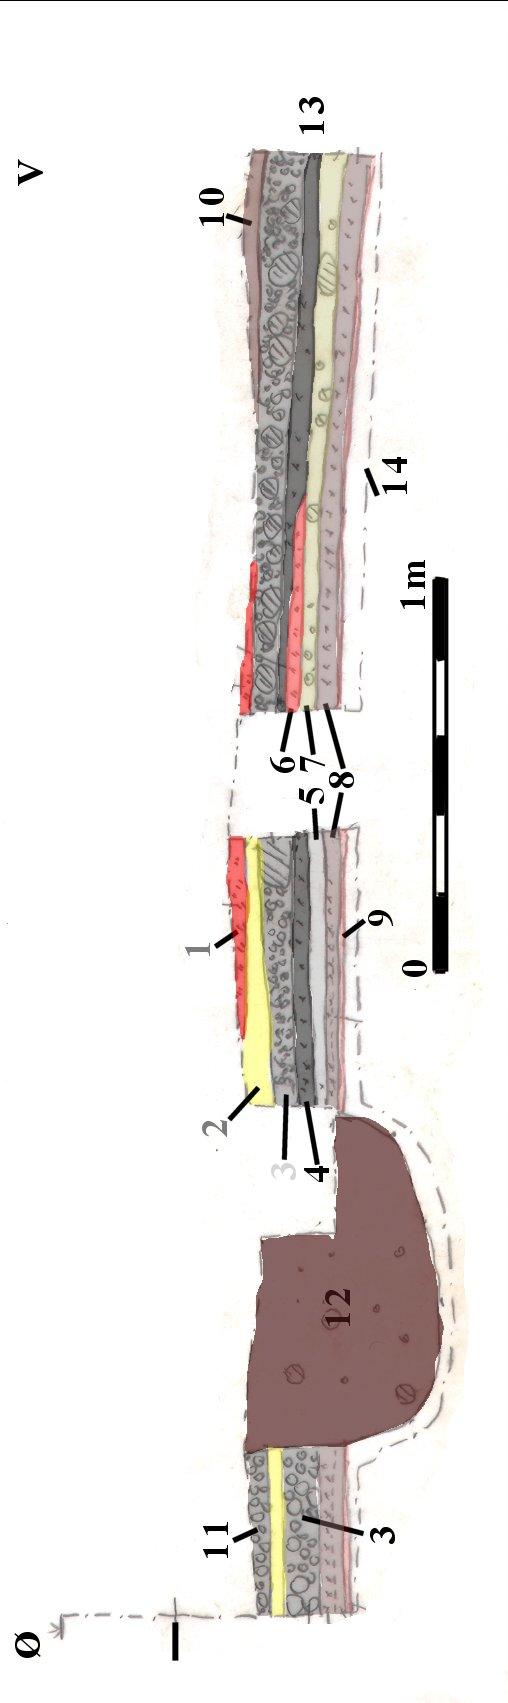 PROFILER Fig. 57 rofil 10, lagbeskrivelse. Arkæologisk relevante lag er markeret med farve. 1 Rødbrændt ler. 2 Gult ler (lergulv). 3 Rallag (2-10 cm store strandsten). Underlag for gulv i hus.